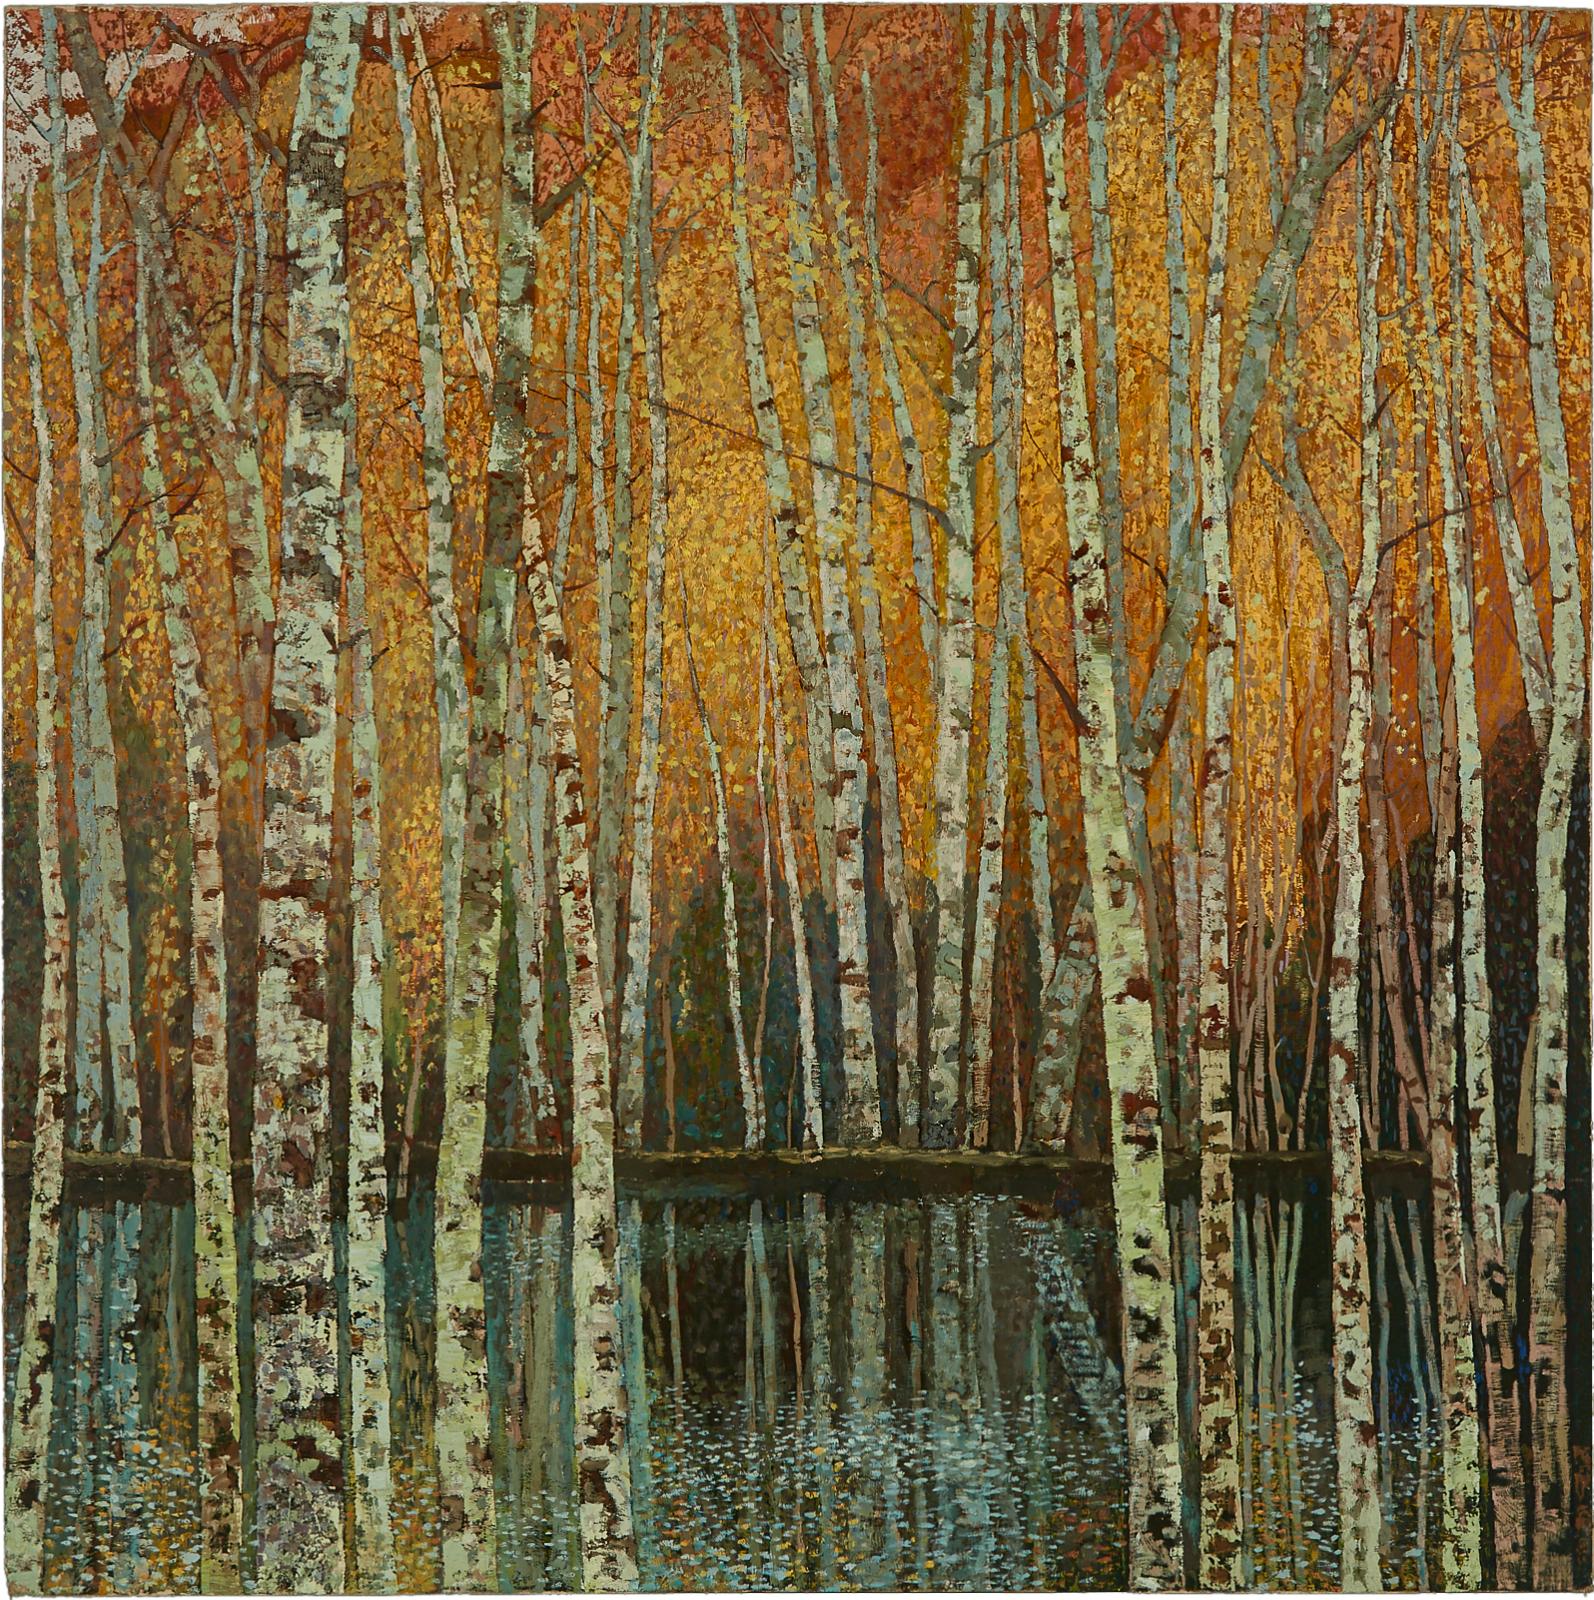 Huang Guanyu (1945) - Autumn